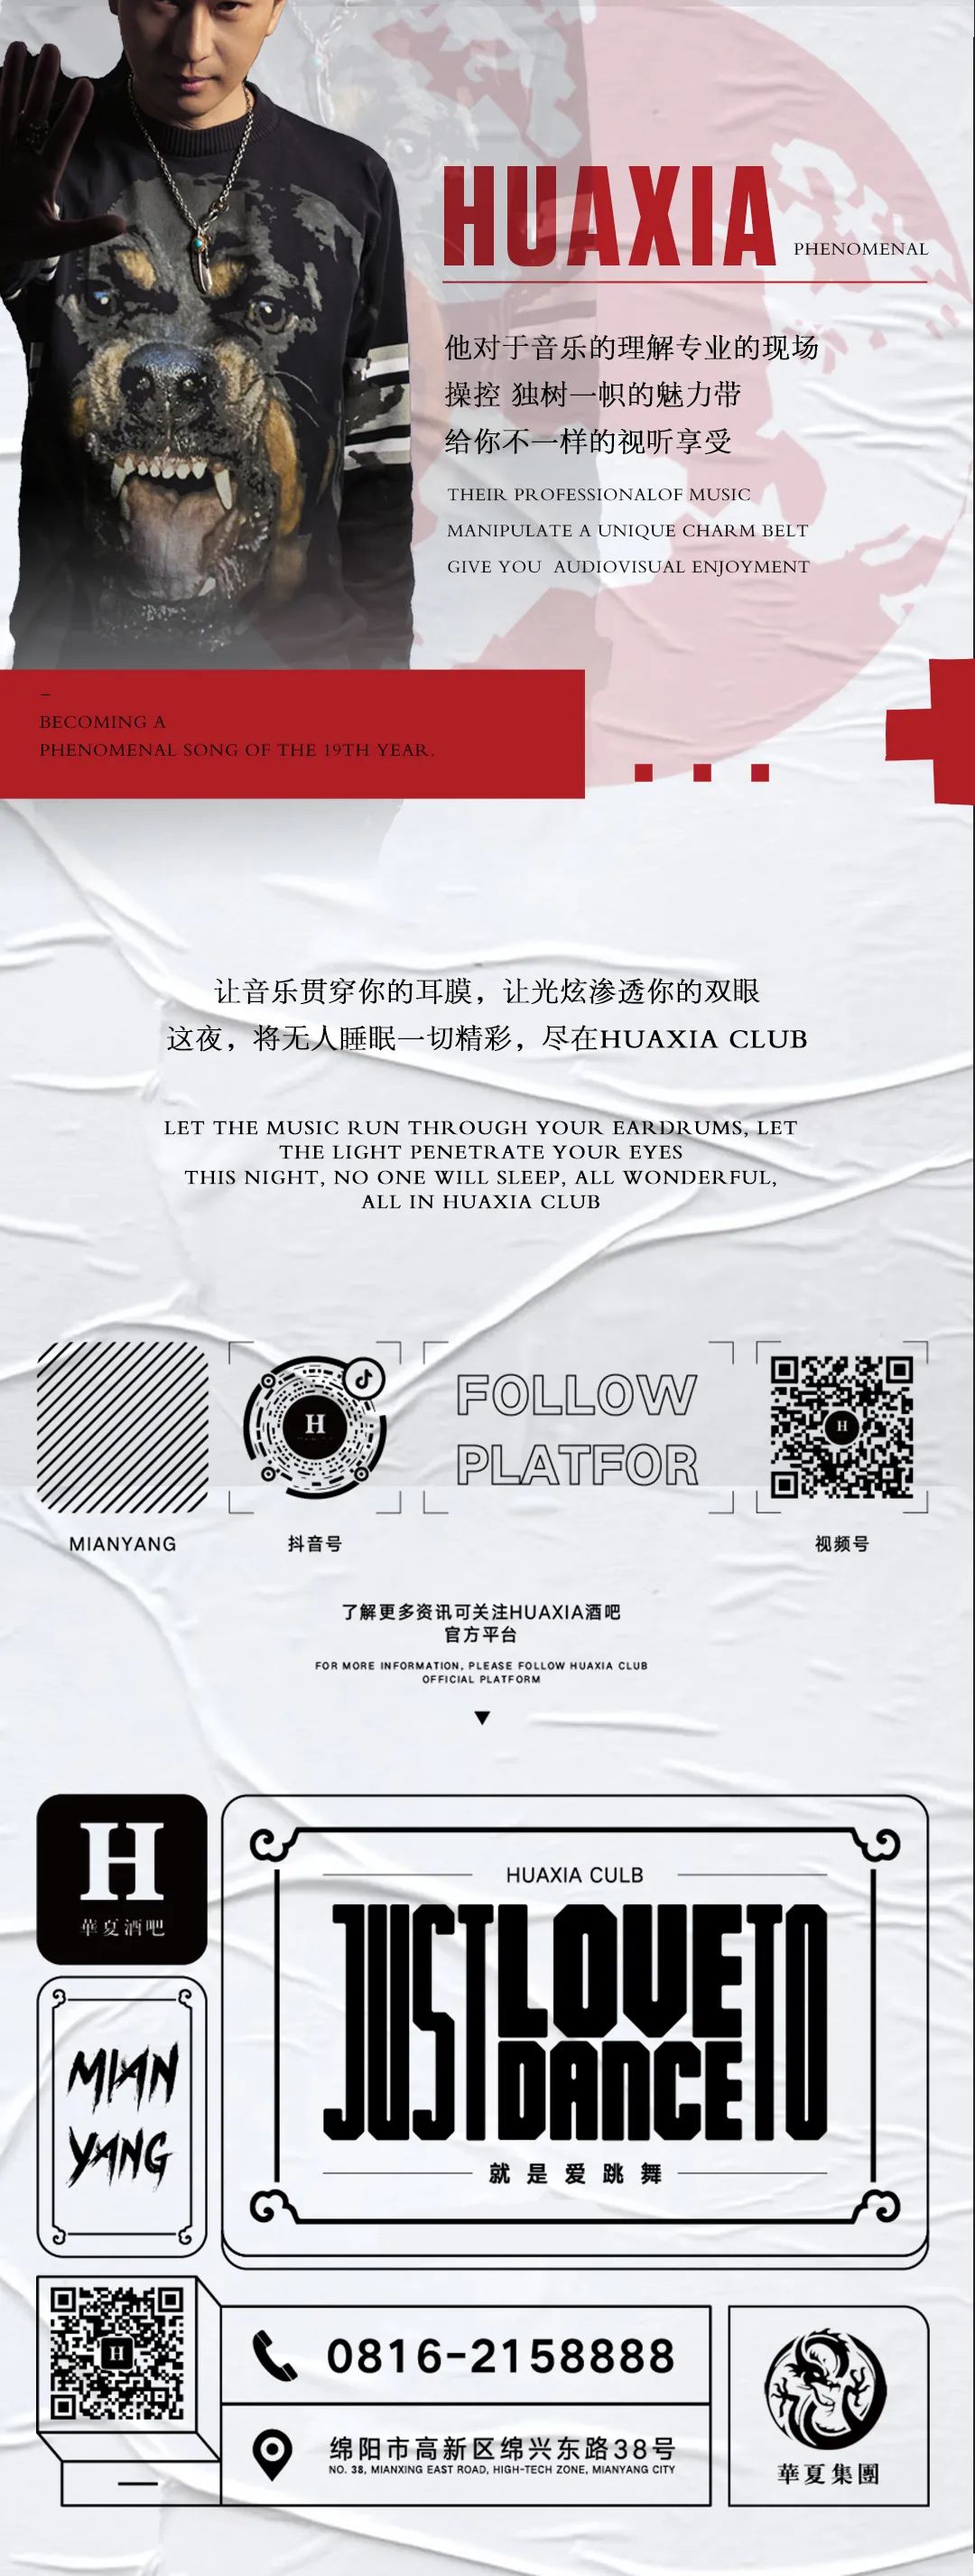 09 22丨中国电音教父朱刚（Calvin .Z）登陆华夏-绵阳华夏酒吧/HUAXIA CLUB